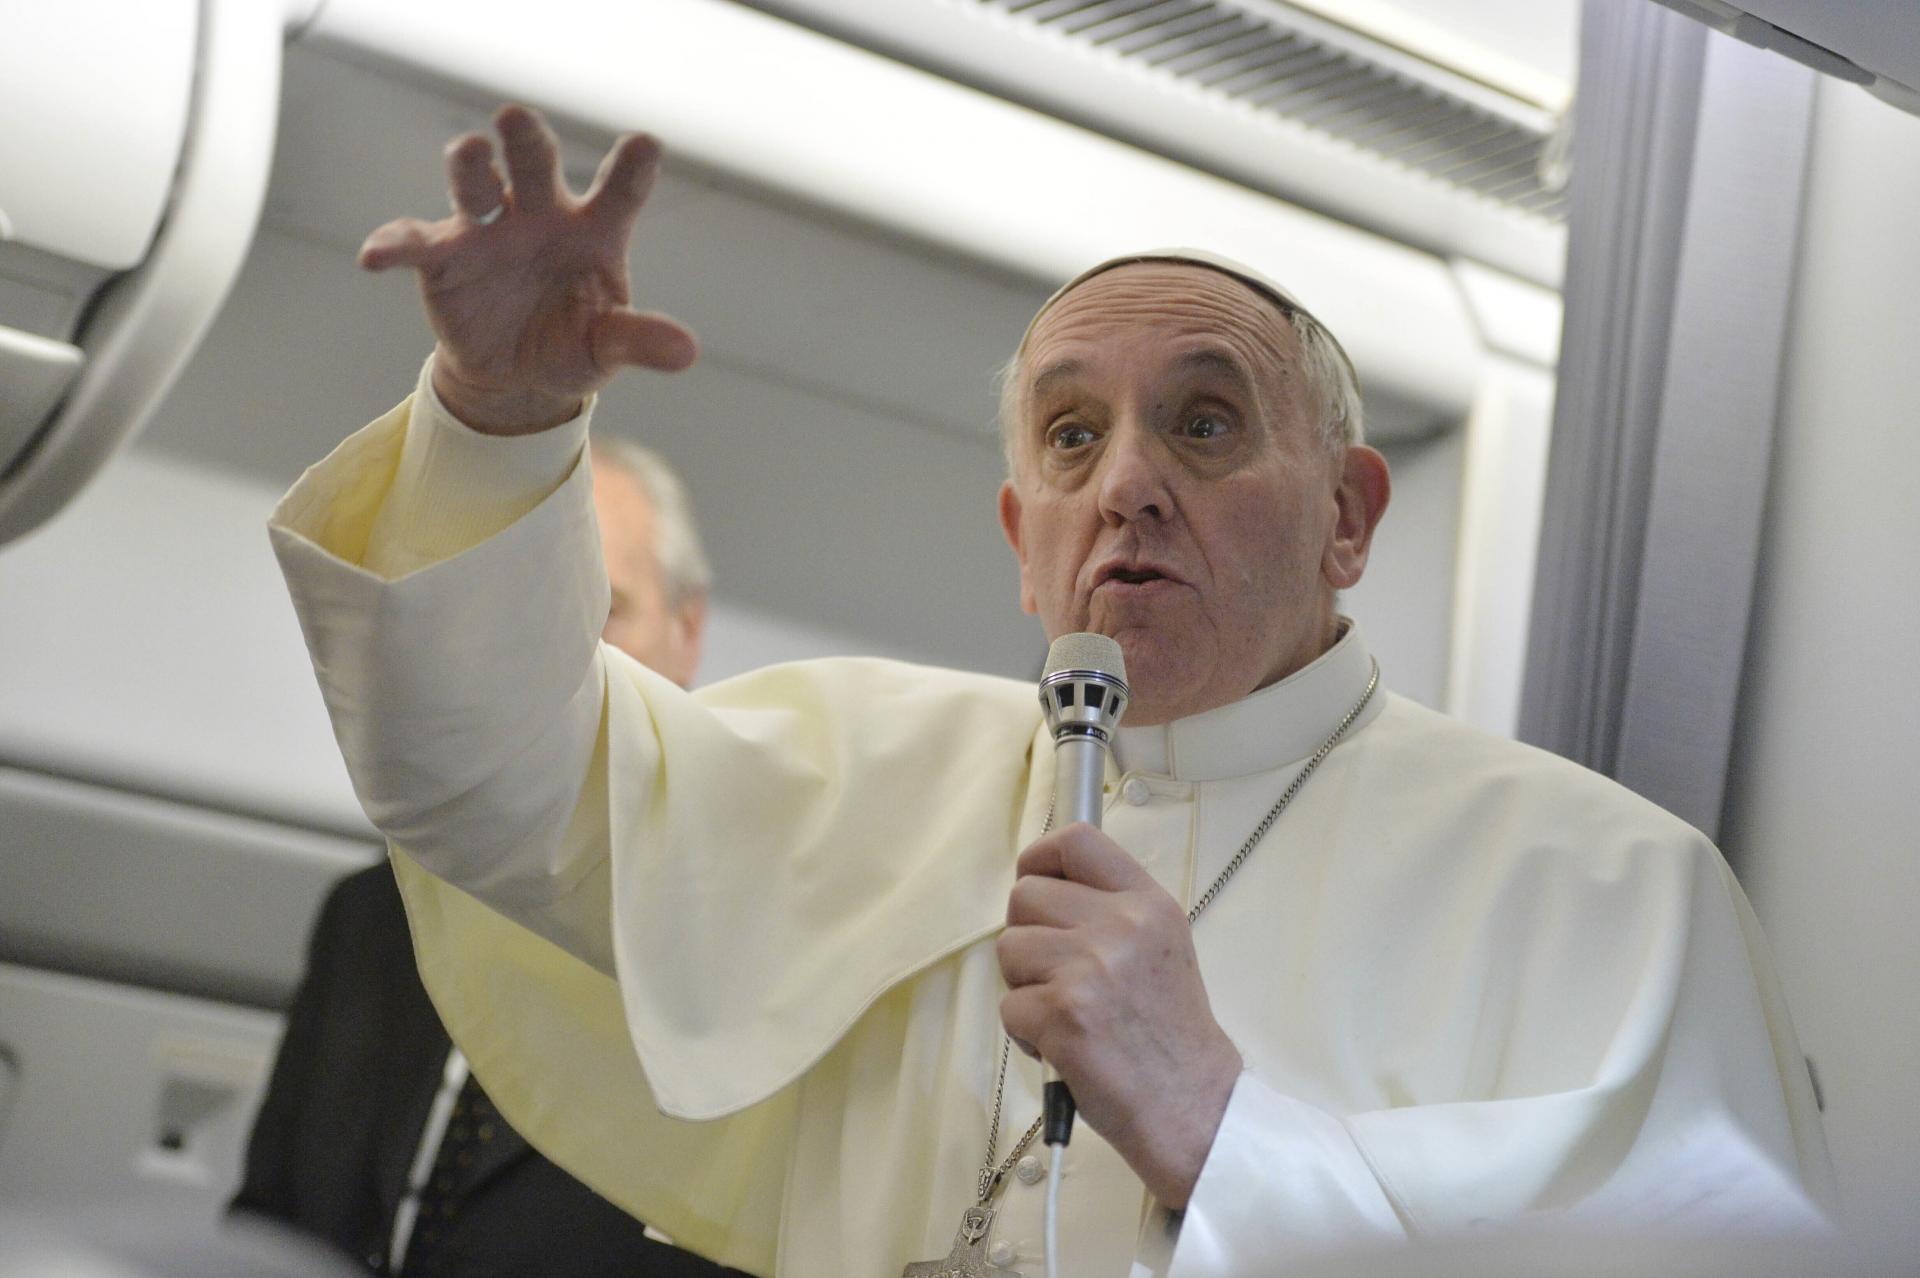 Podcastom „podľahla“ už aj Svätá stolica. Pápež ich spustil na výročie svojho zvolenia, volajú to popecast